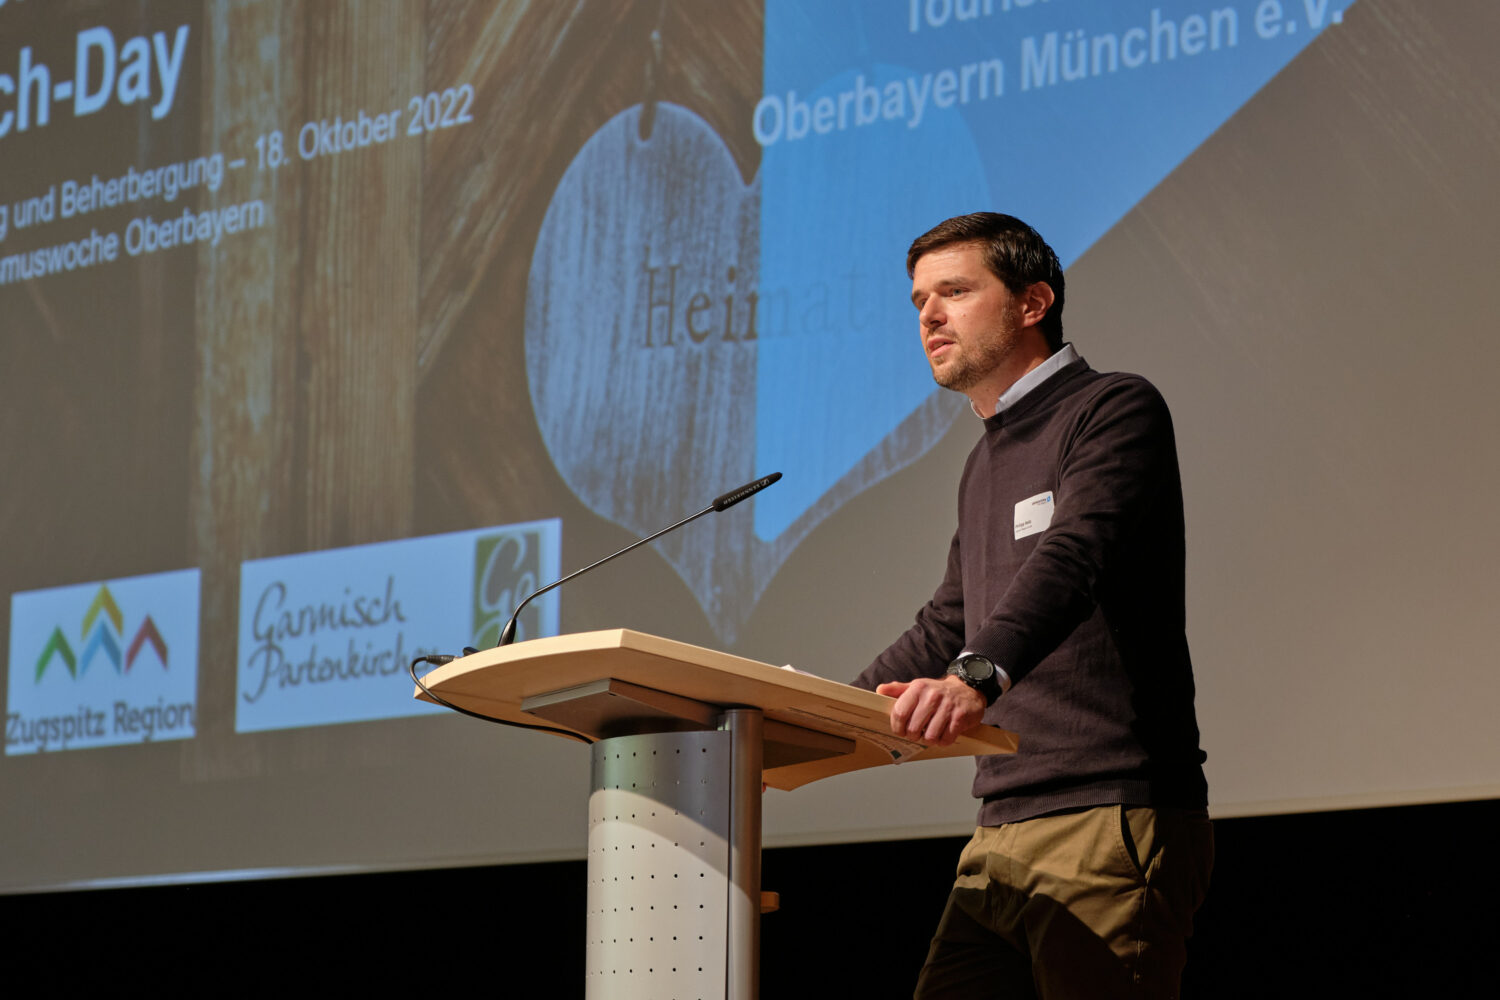 Philipp Holz (Zugspitz Region), beim Tag der Digitalisierung und Beherbergung in GaPa